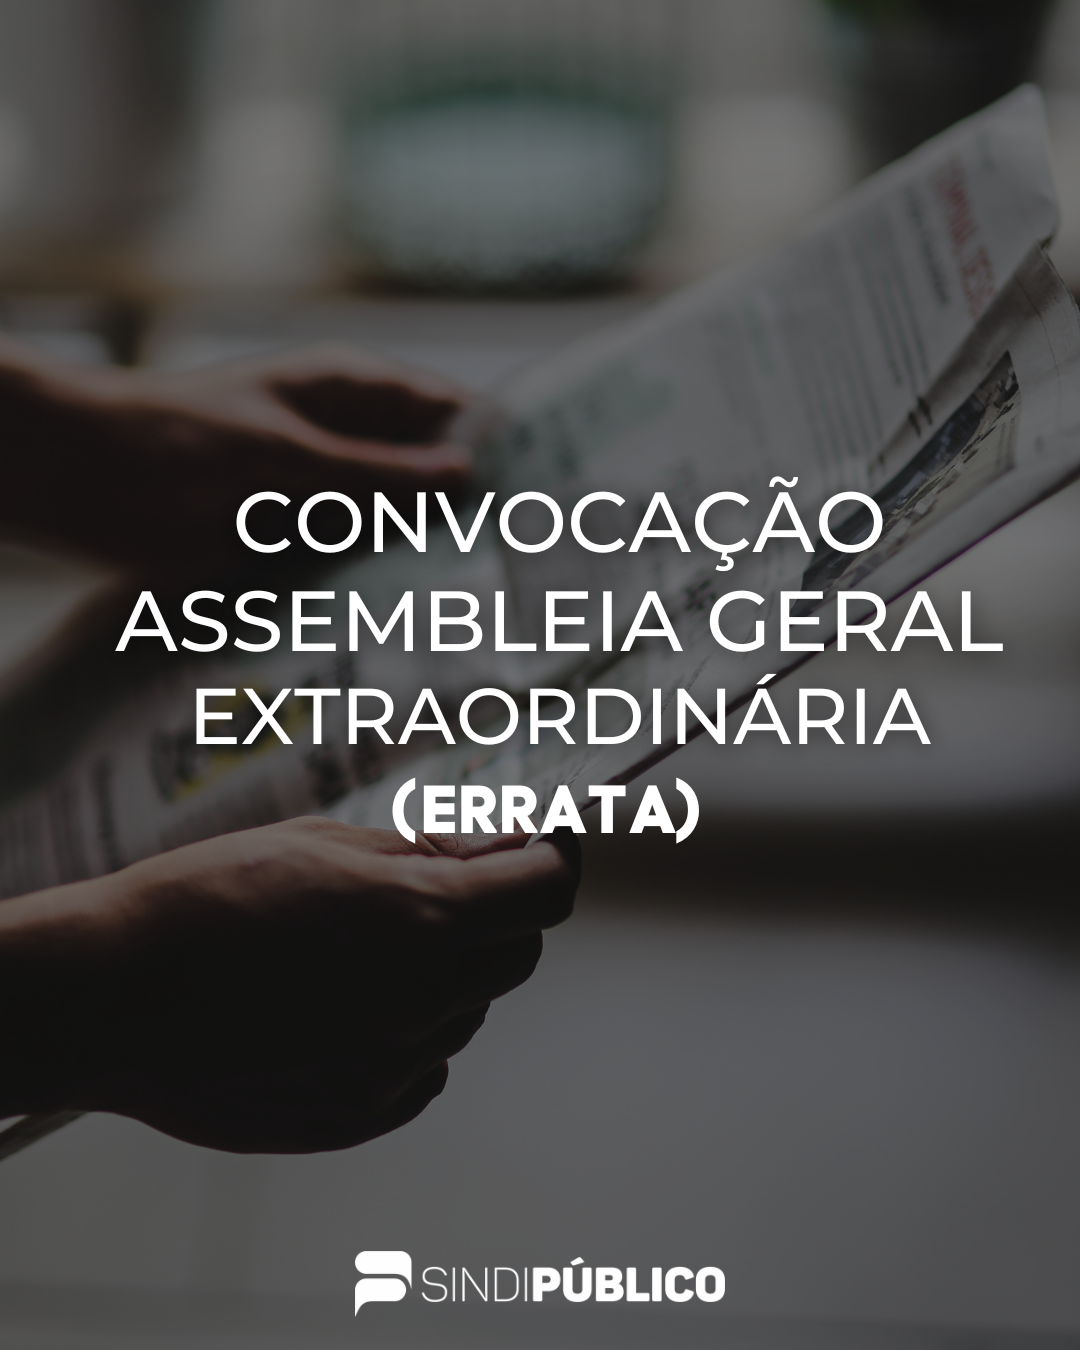 EDITAL DE CONVOCAÇÃO DA ASSEMBLEIA GERAL EXTRAORDINÁRIA DO SINDIPÚBLICO